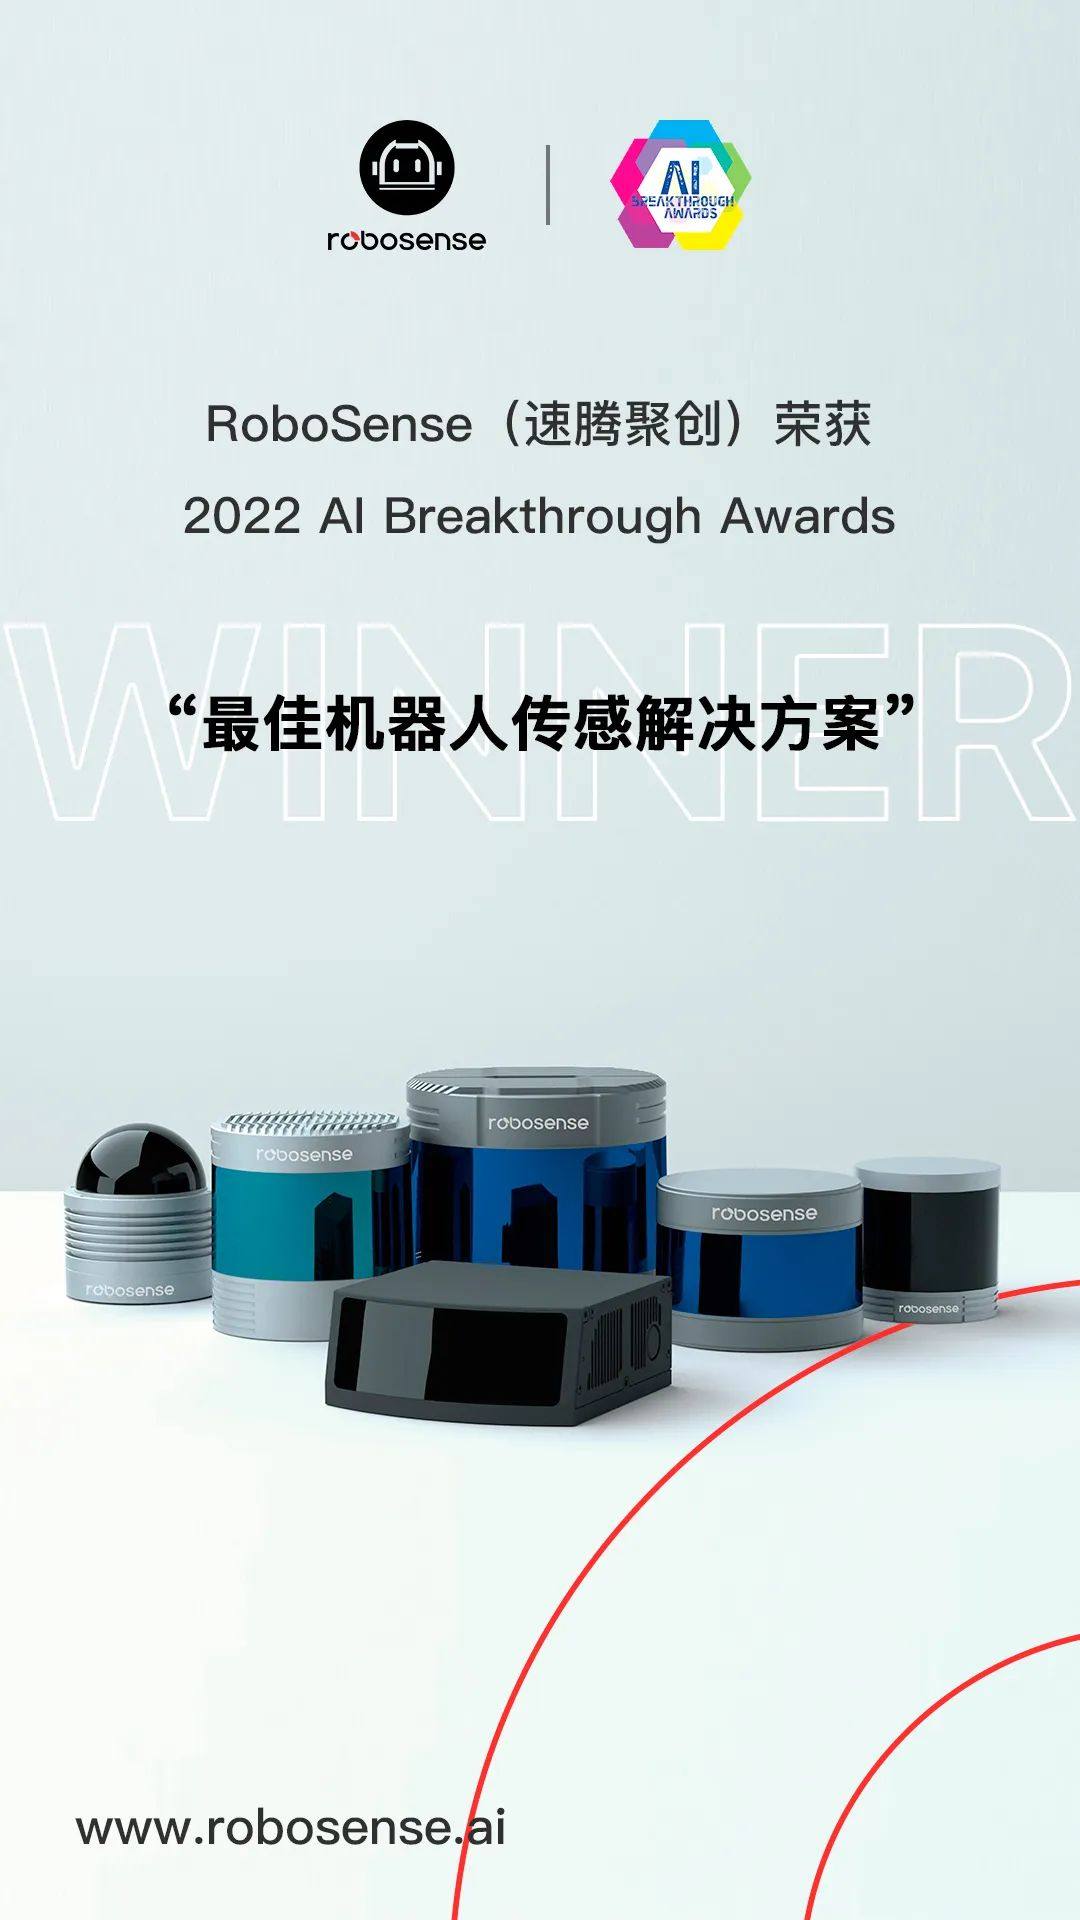 速腾聚创荣获 AI Breakthrough Awards “最佳机器人传感解决方案”